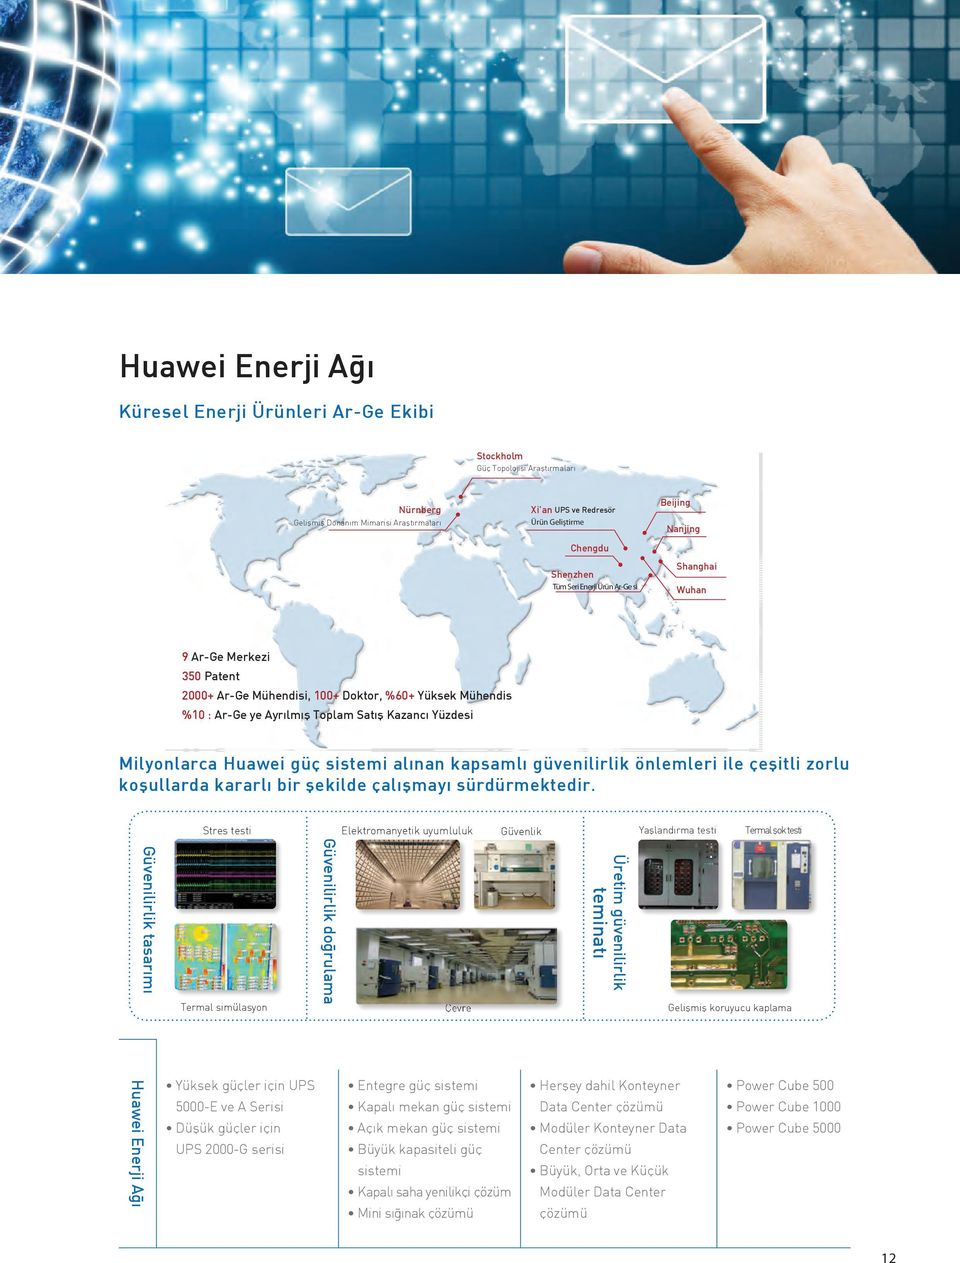 Milyonlarca Huawei güç sistemi alınan kapsamlı güvenilirlik önlemleri ile çeşitli zorlu koşullarda kararlı bir şekilde çalışmayı sürdürmektedir.